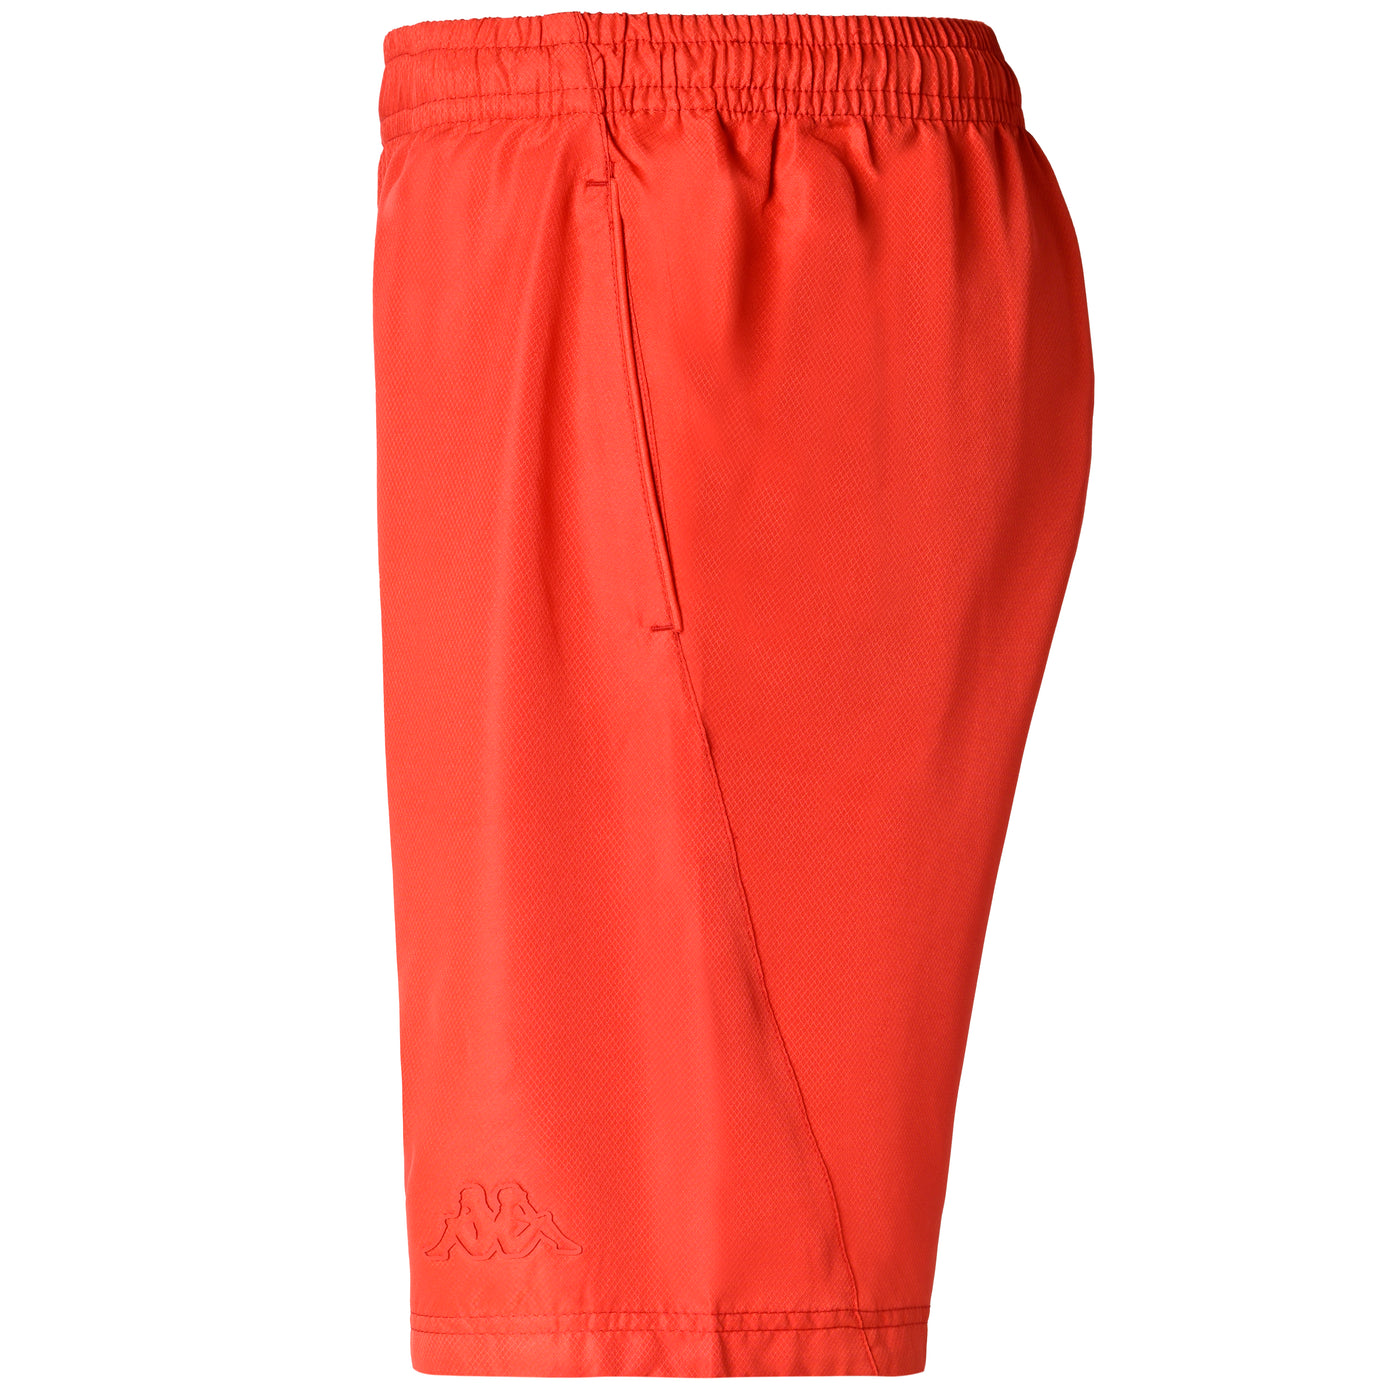 Pantalones cortos Kiamon Rojo Hombre